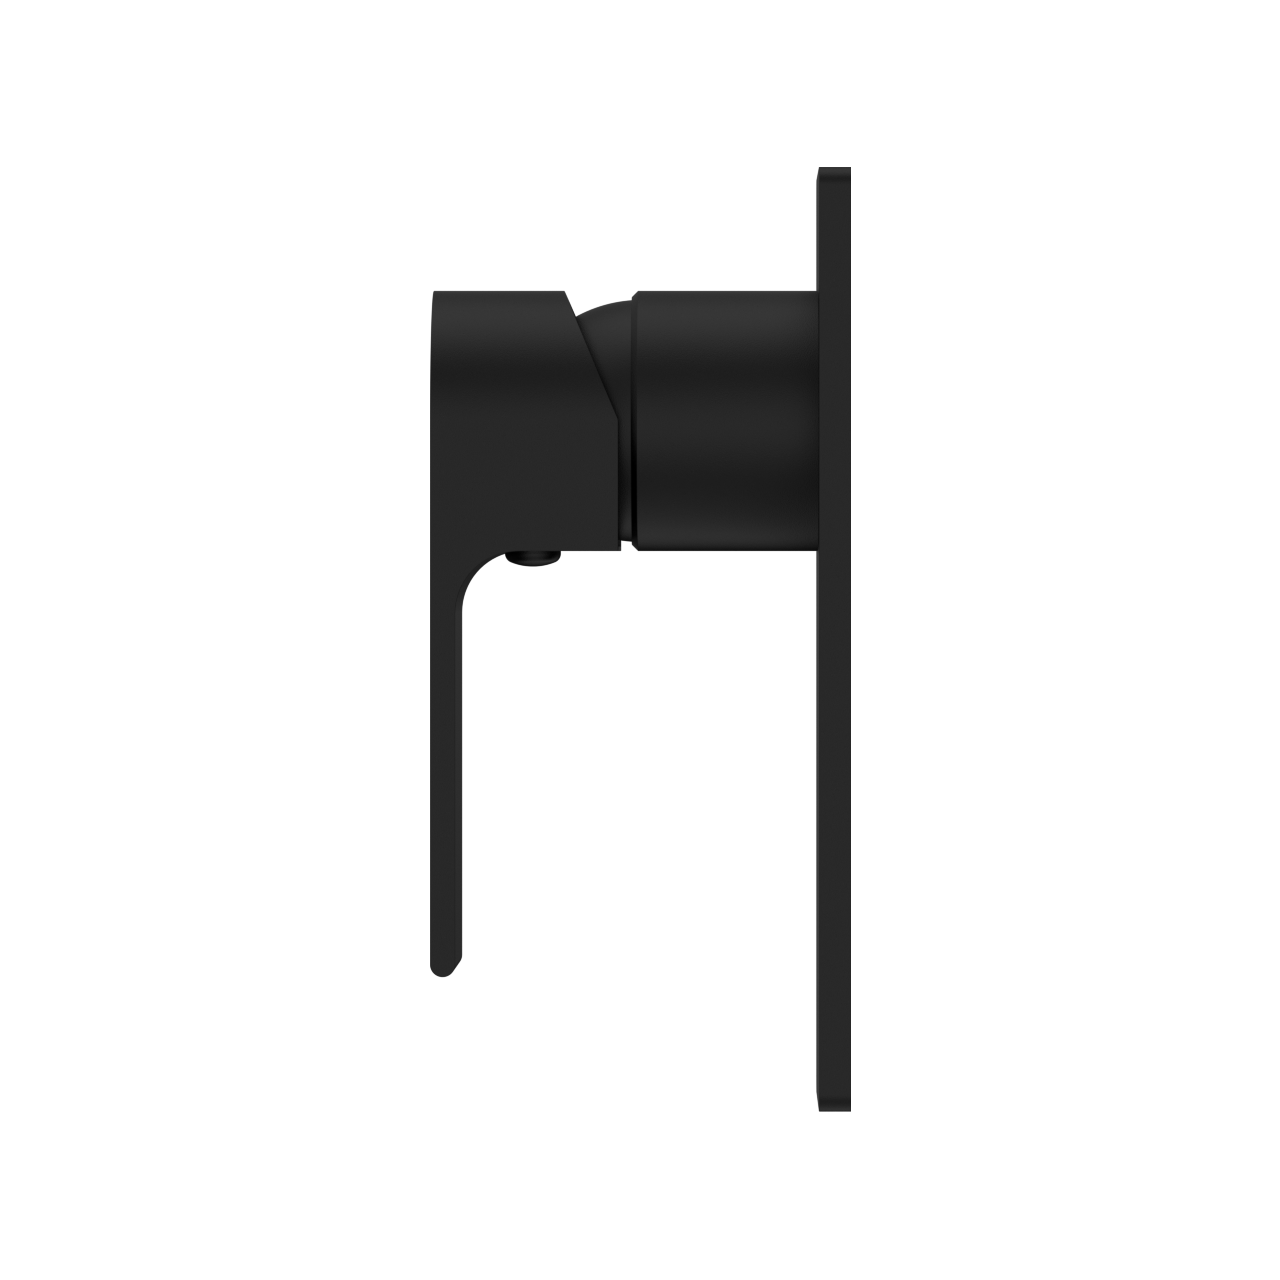 NERO BIANCA SHOWER MIXER 150MM MATTE BLACK